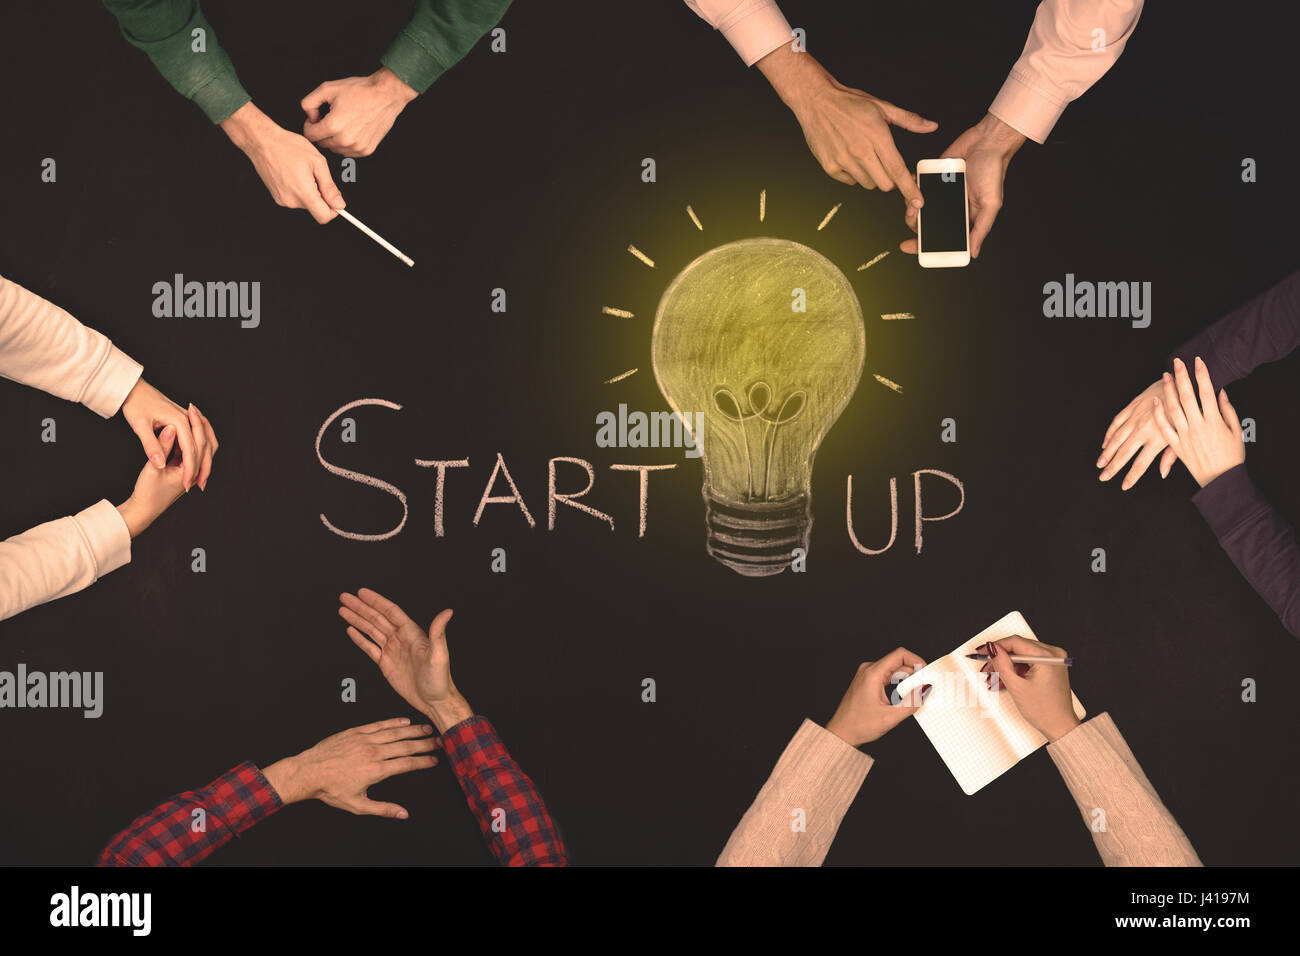 Teamarbeit Start Konzept - Draufsicht von sechs Personen. Stockfoto